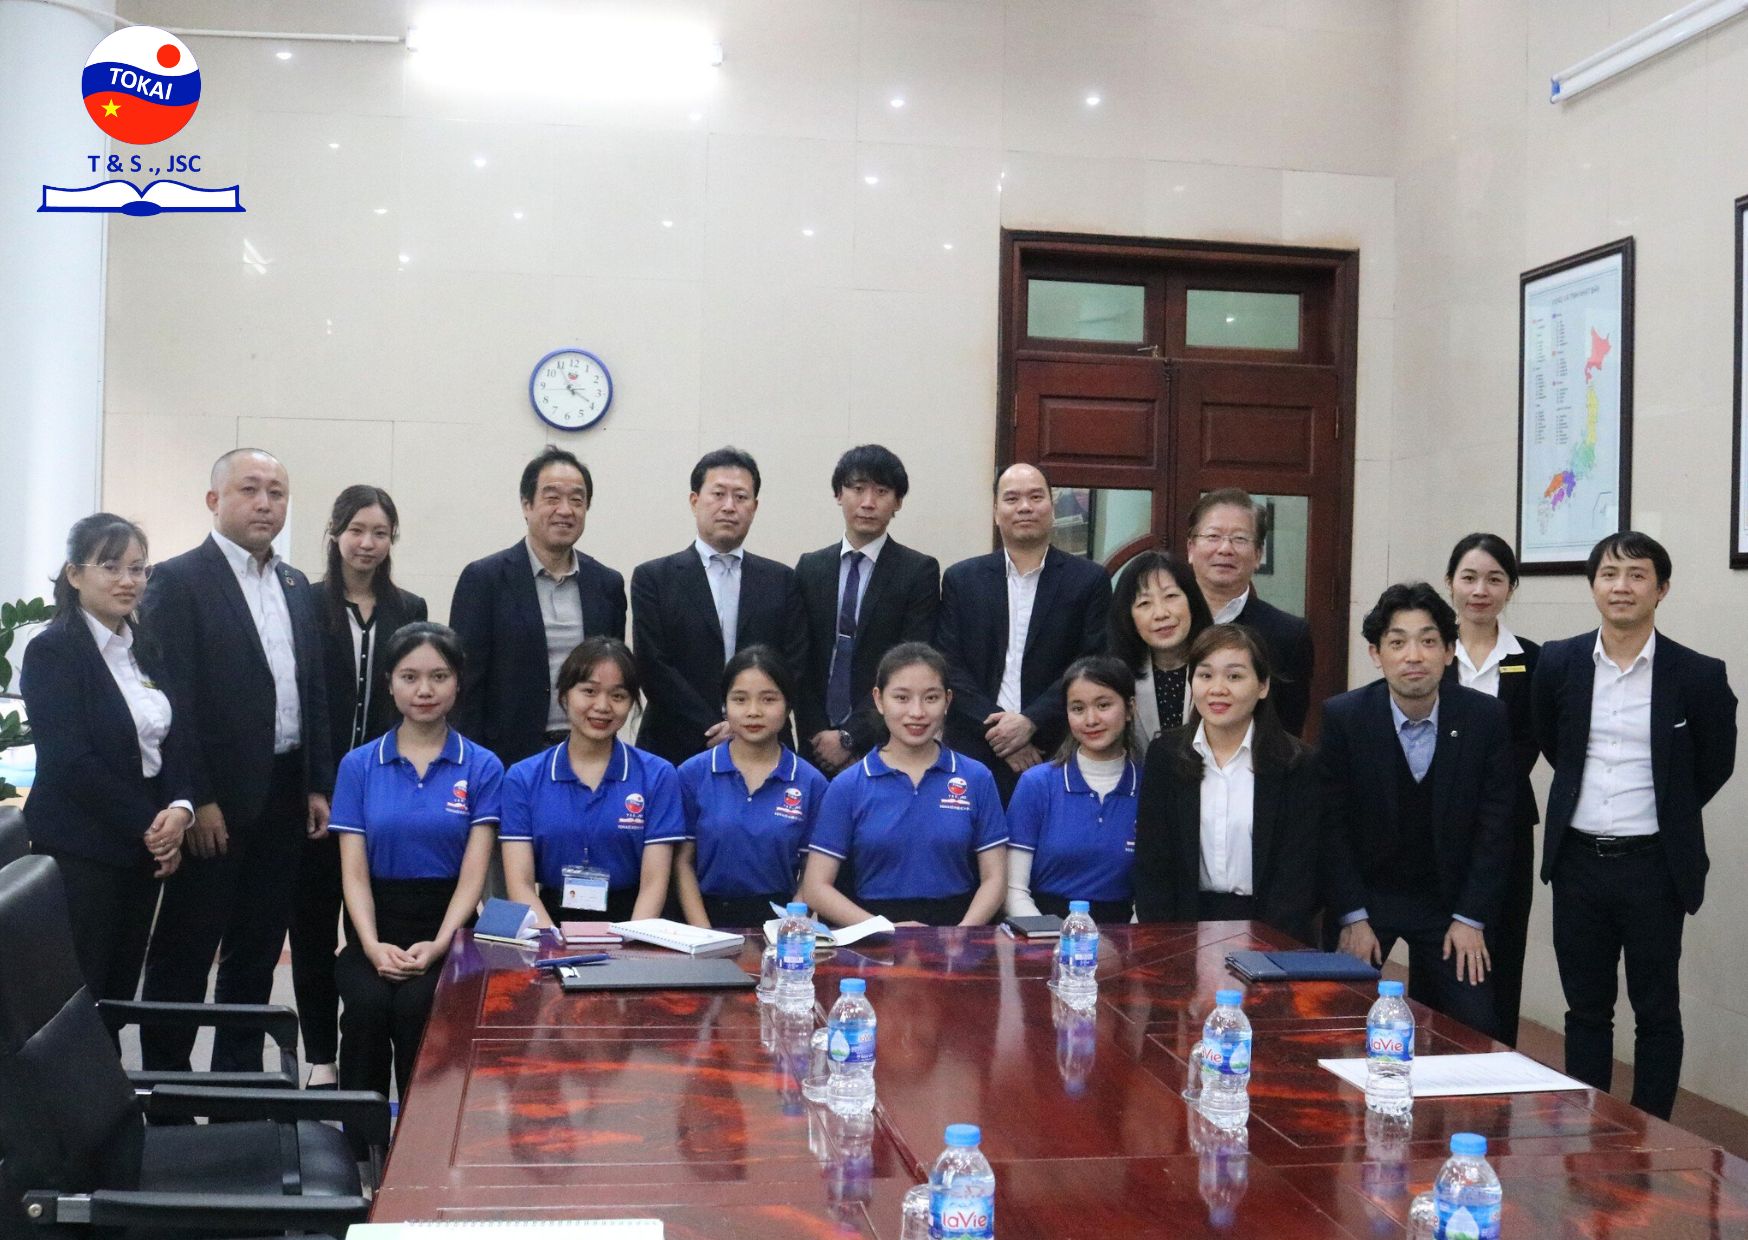 Đại diện tỉnh và Hiệp hội chăm sóc tỉnh Chiba gặp gỡ các bạn đạt học bổng điều dưỡng Chiba khoá 3 tại Tokai Việt Nhật